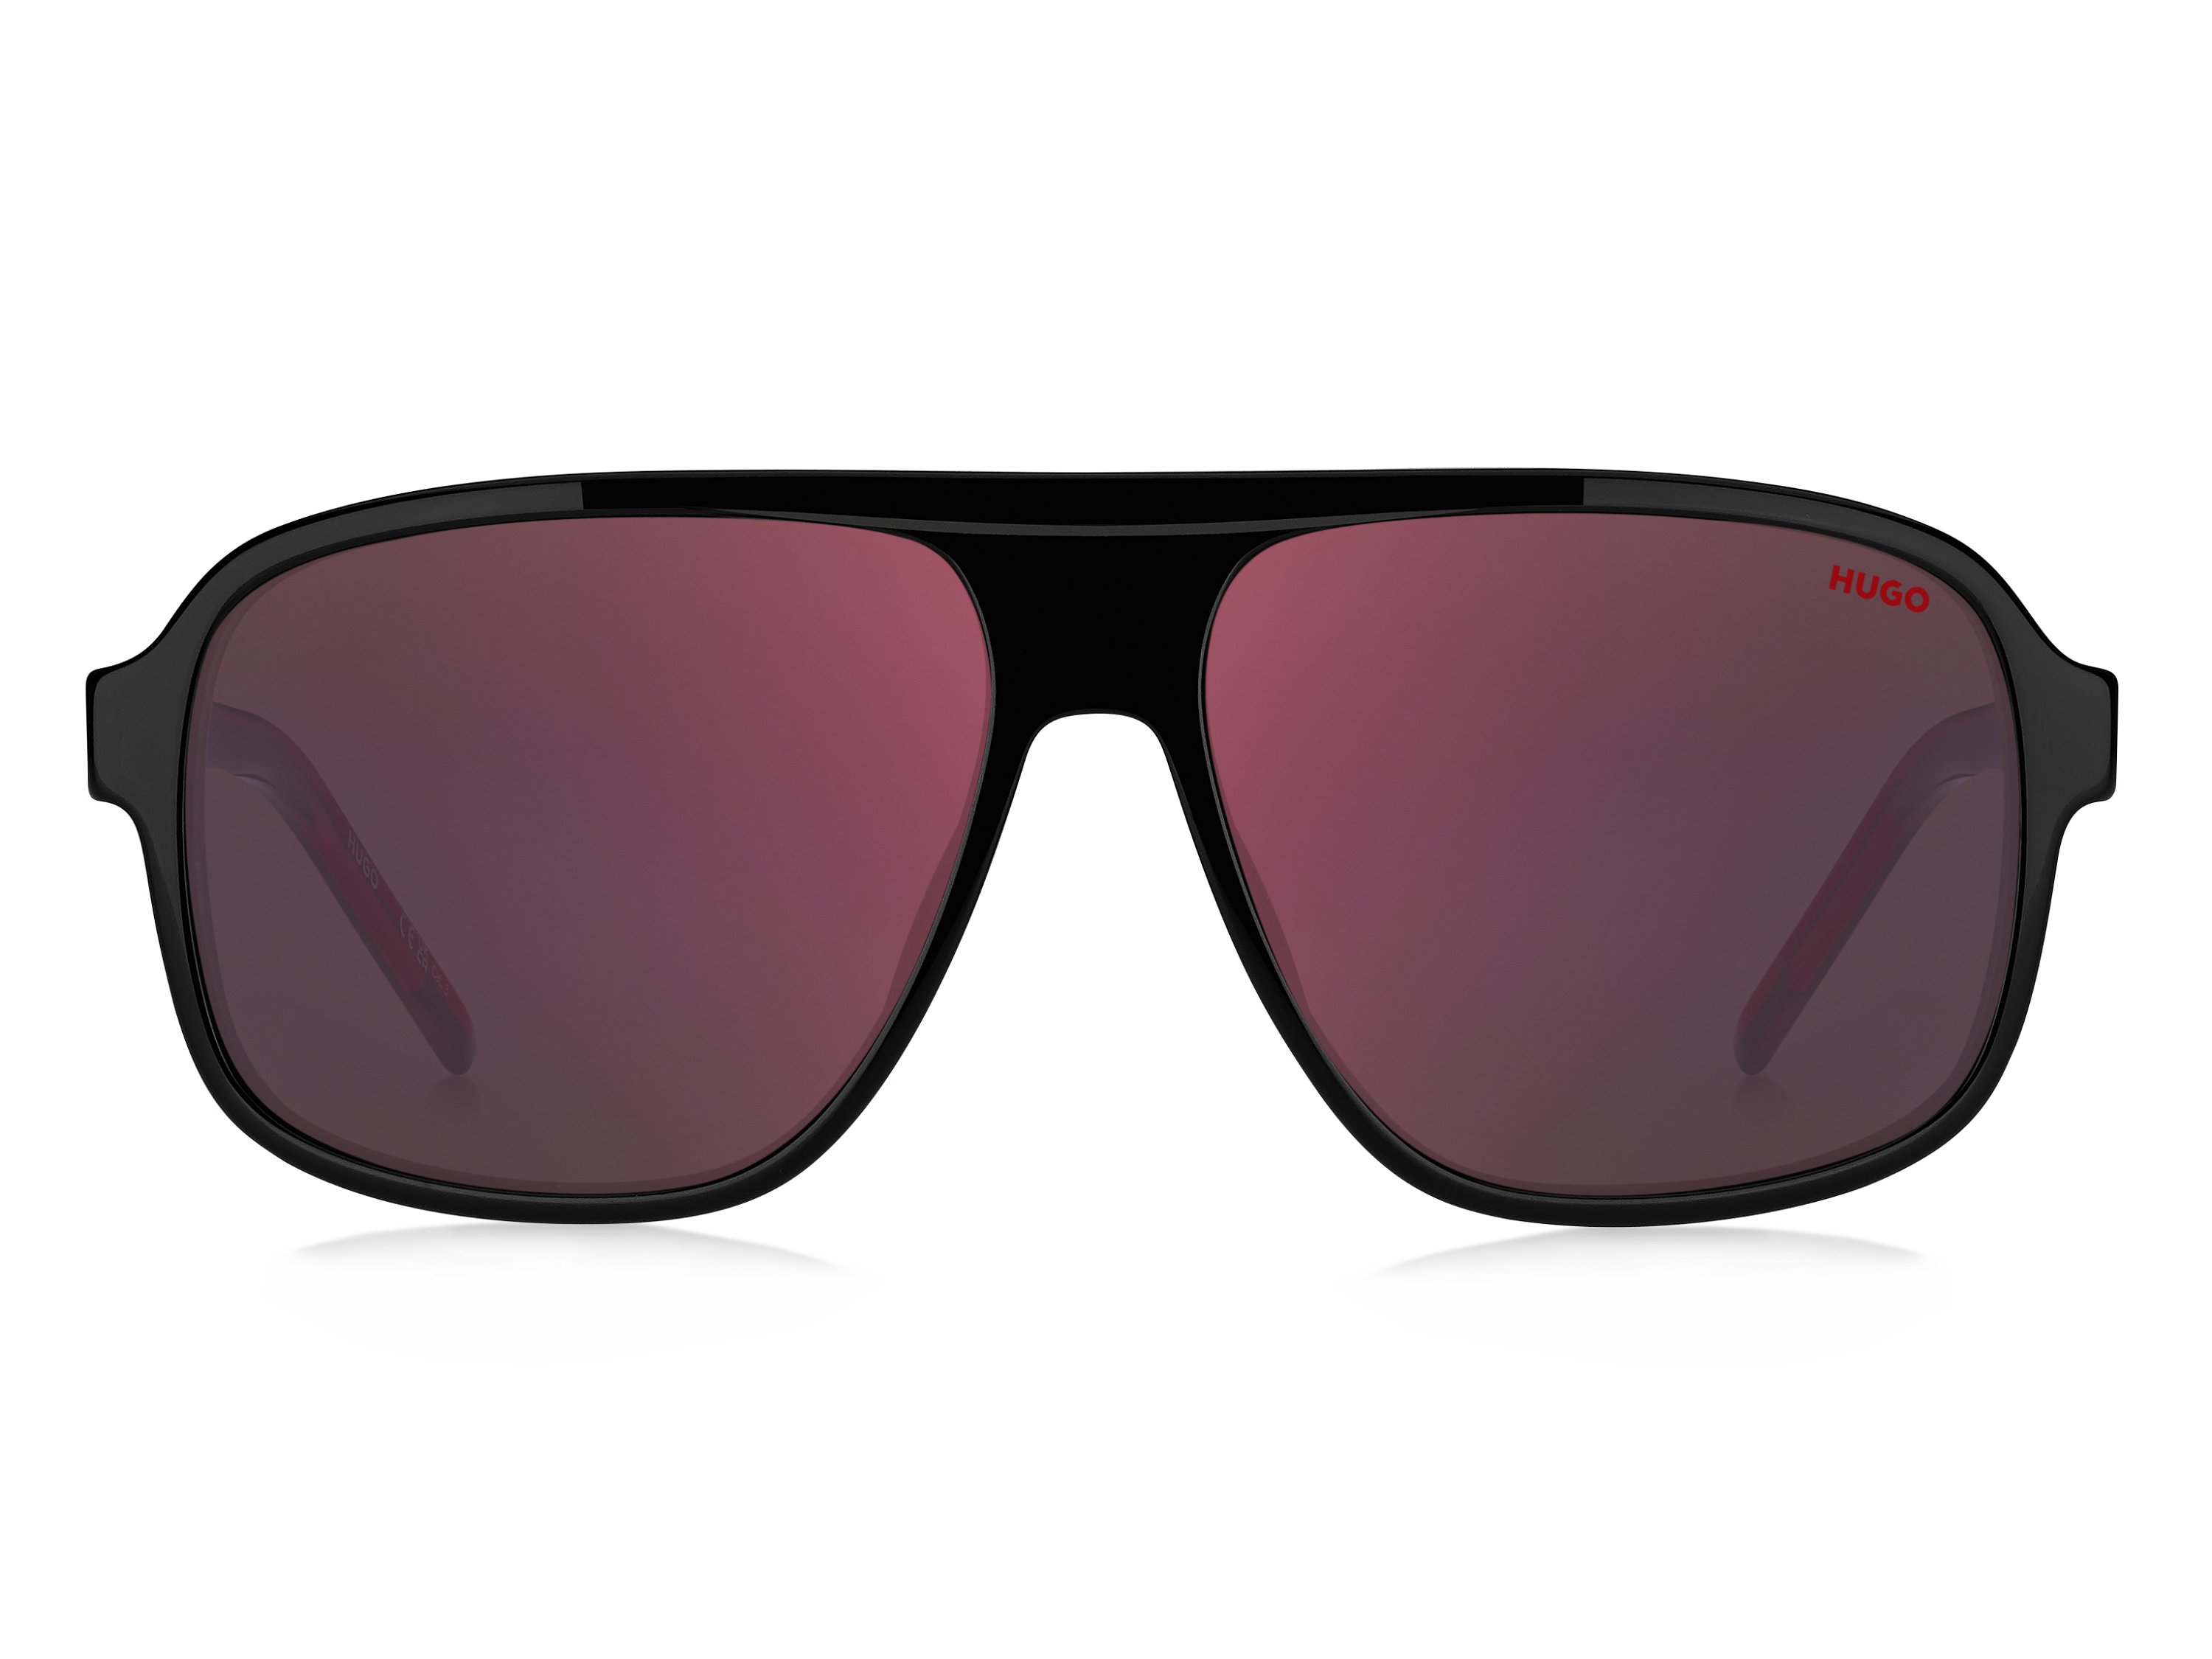 Das Bild zeigt die Sonnenbrille HG1296/S OIT von der Marke Hugo in rot/schwarz.